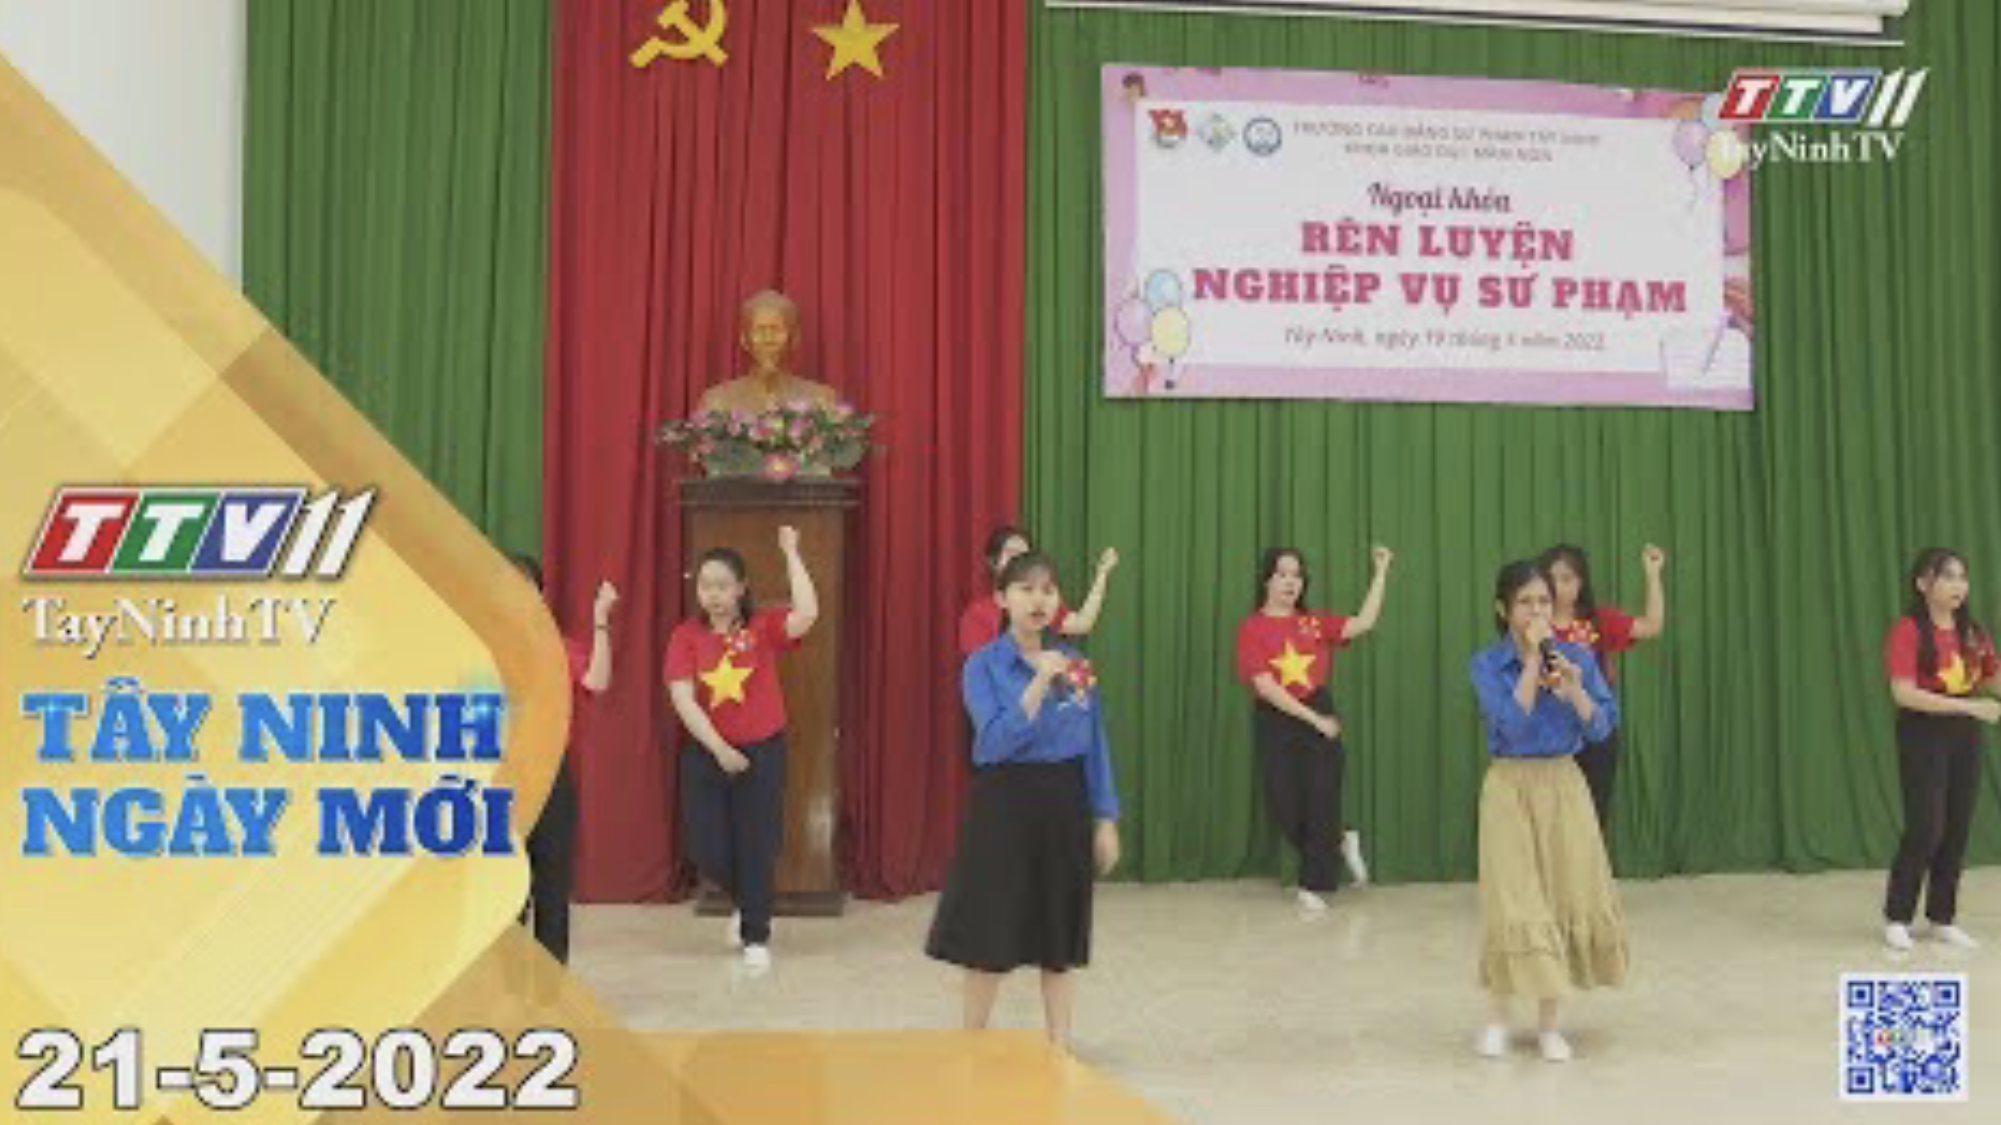 Tây Ninh ngày mới 21-5-2022 | Tin tức hôm nay | TayNinhTV